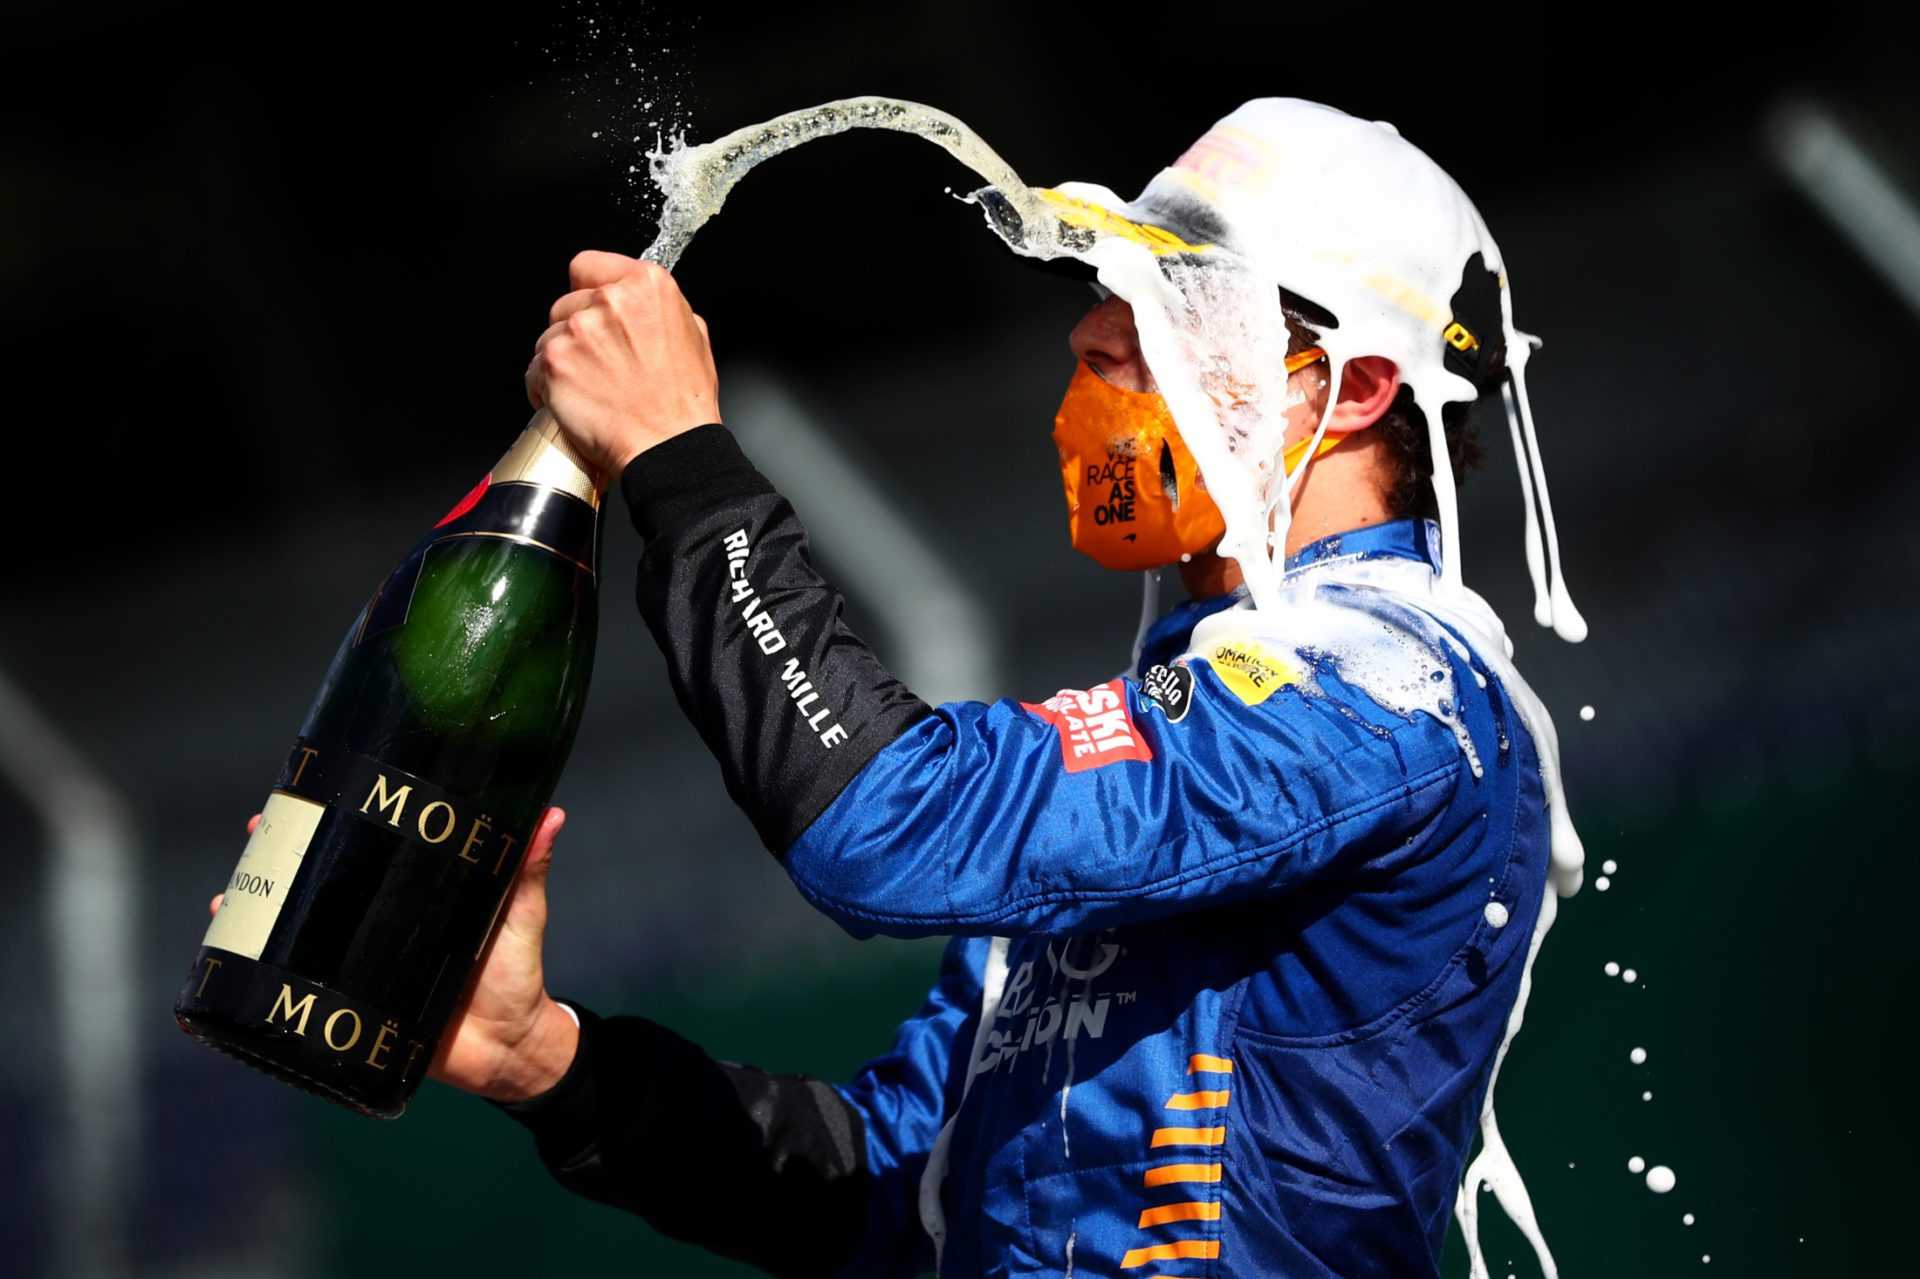 REGARDER: Lando Norris se blesse à la main lors d'un échec de célébration au champagne après le GP d'Italie